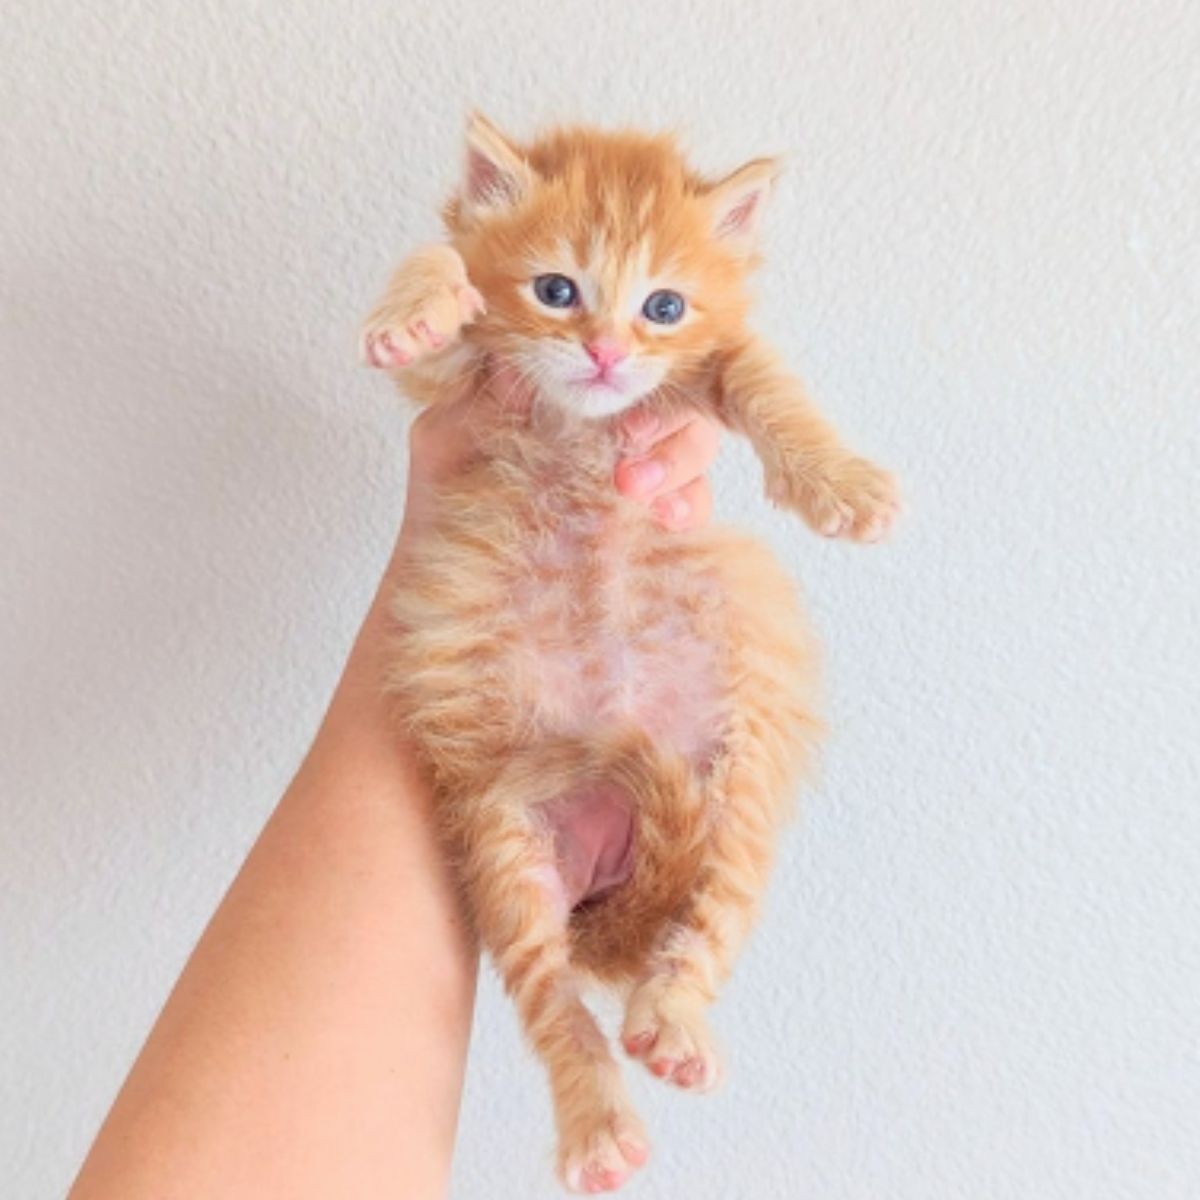 ginger kitten in hand